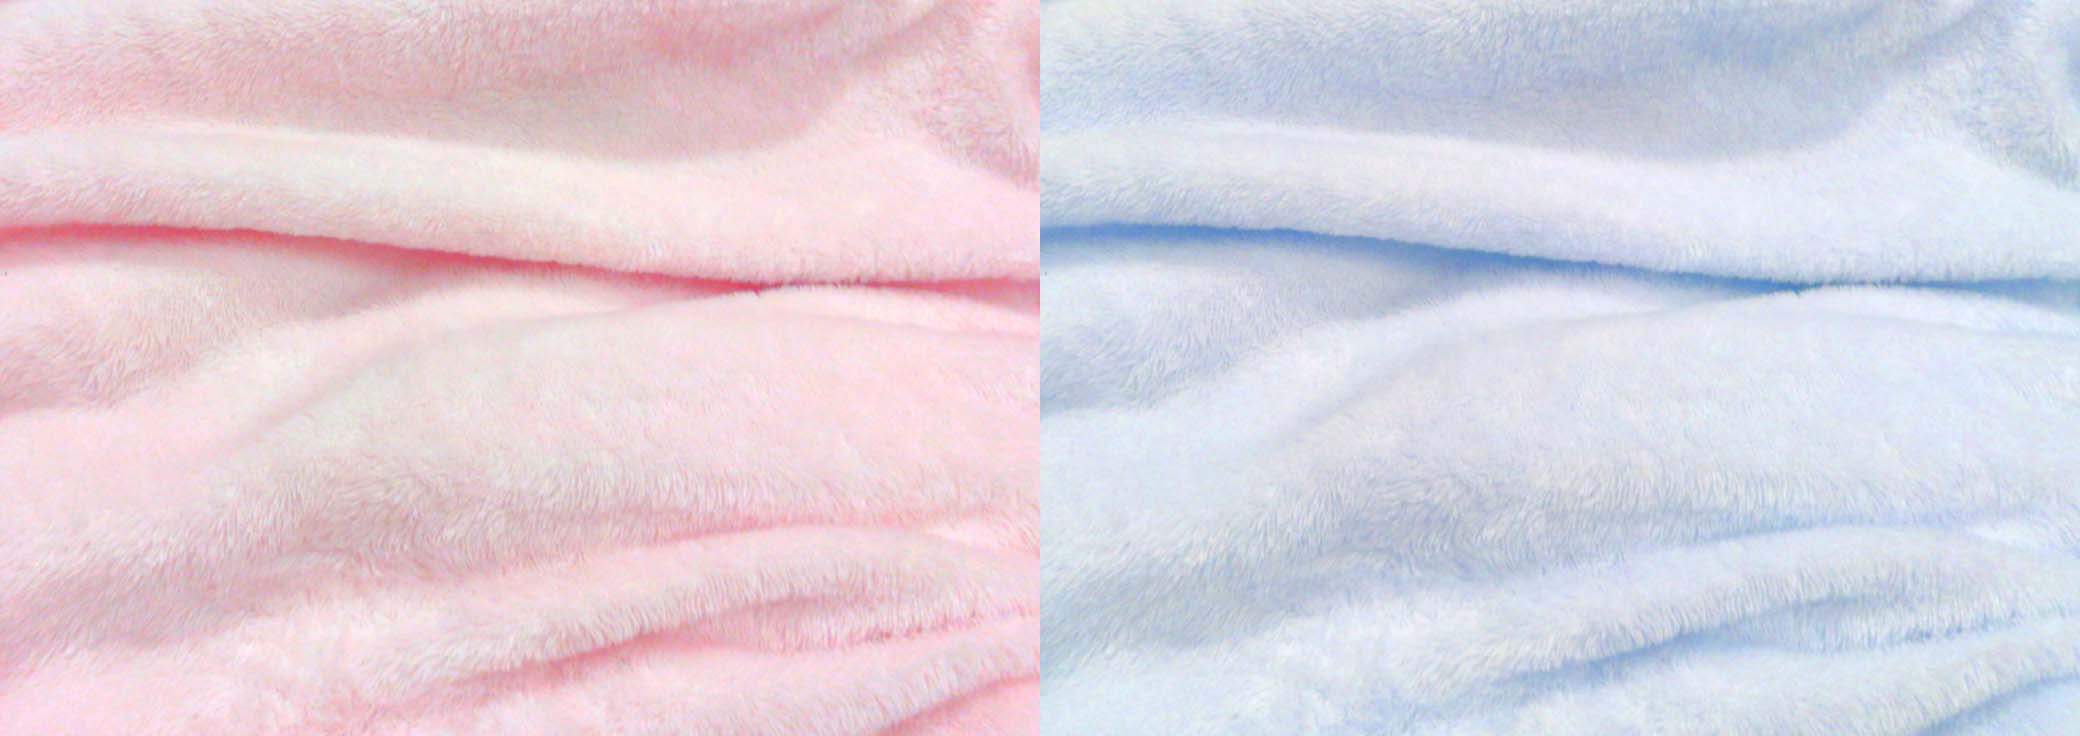 ピンクのタオルと水色のタオルの写真